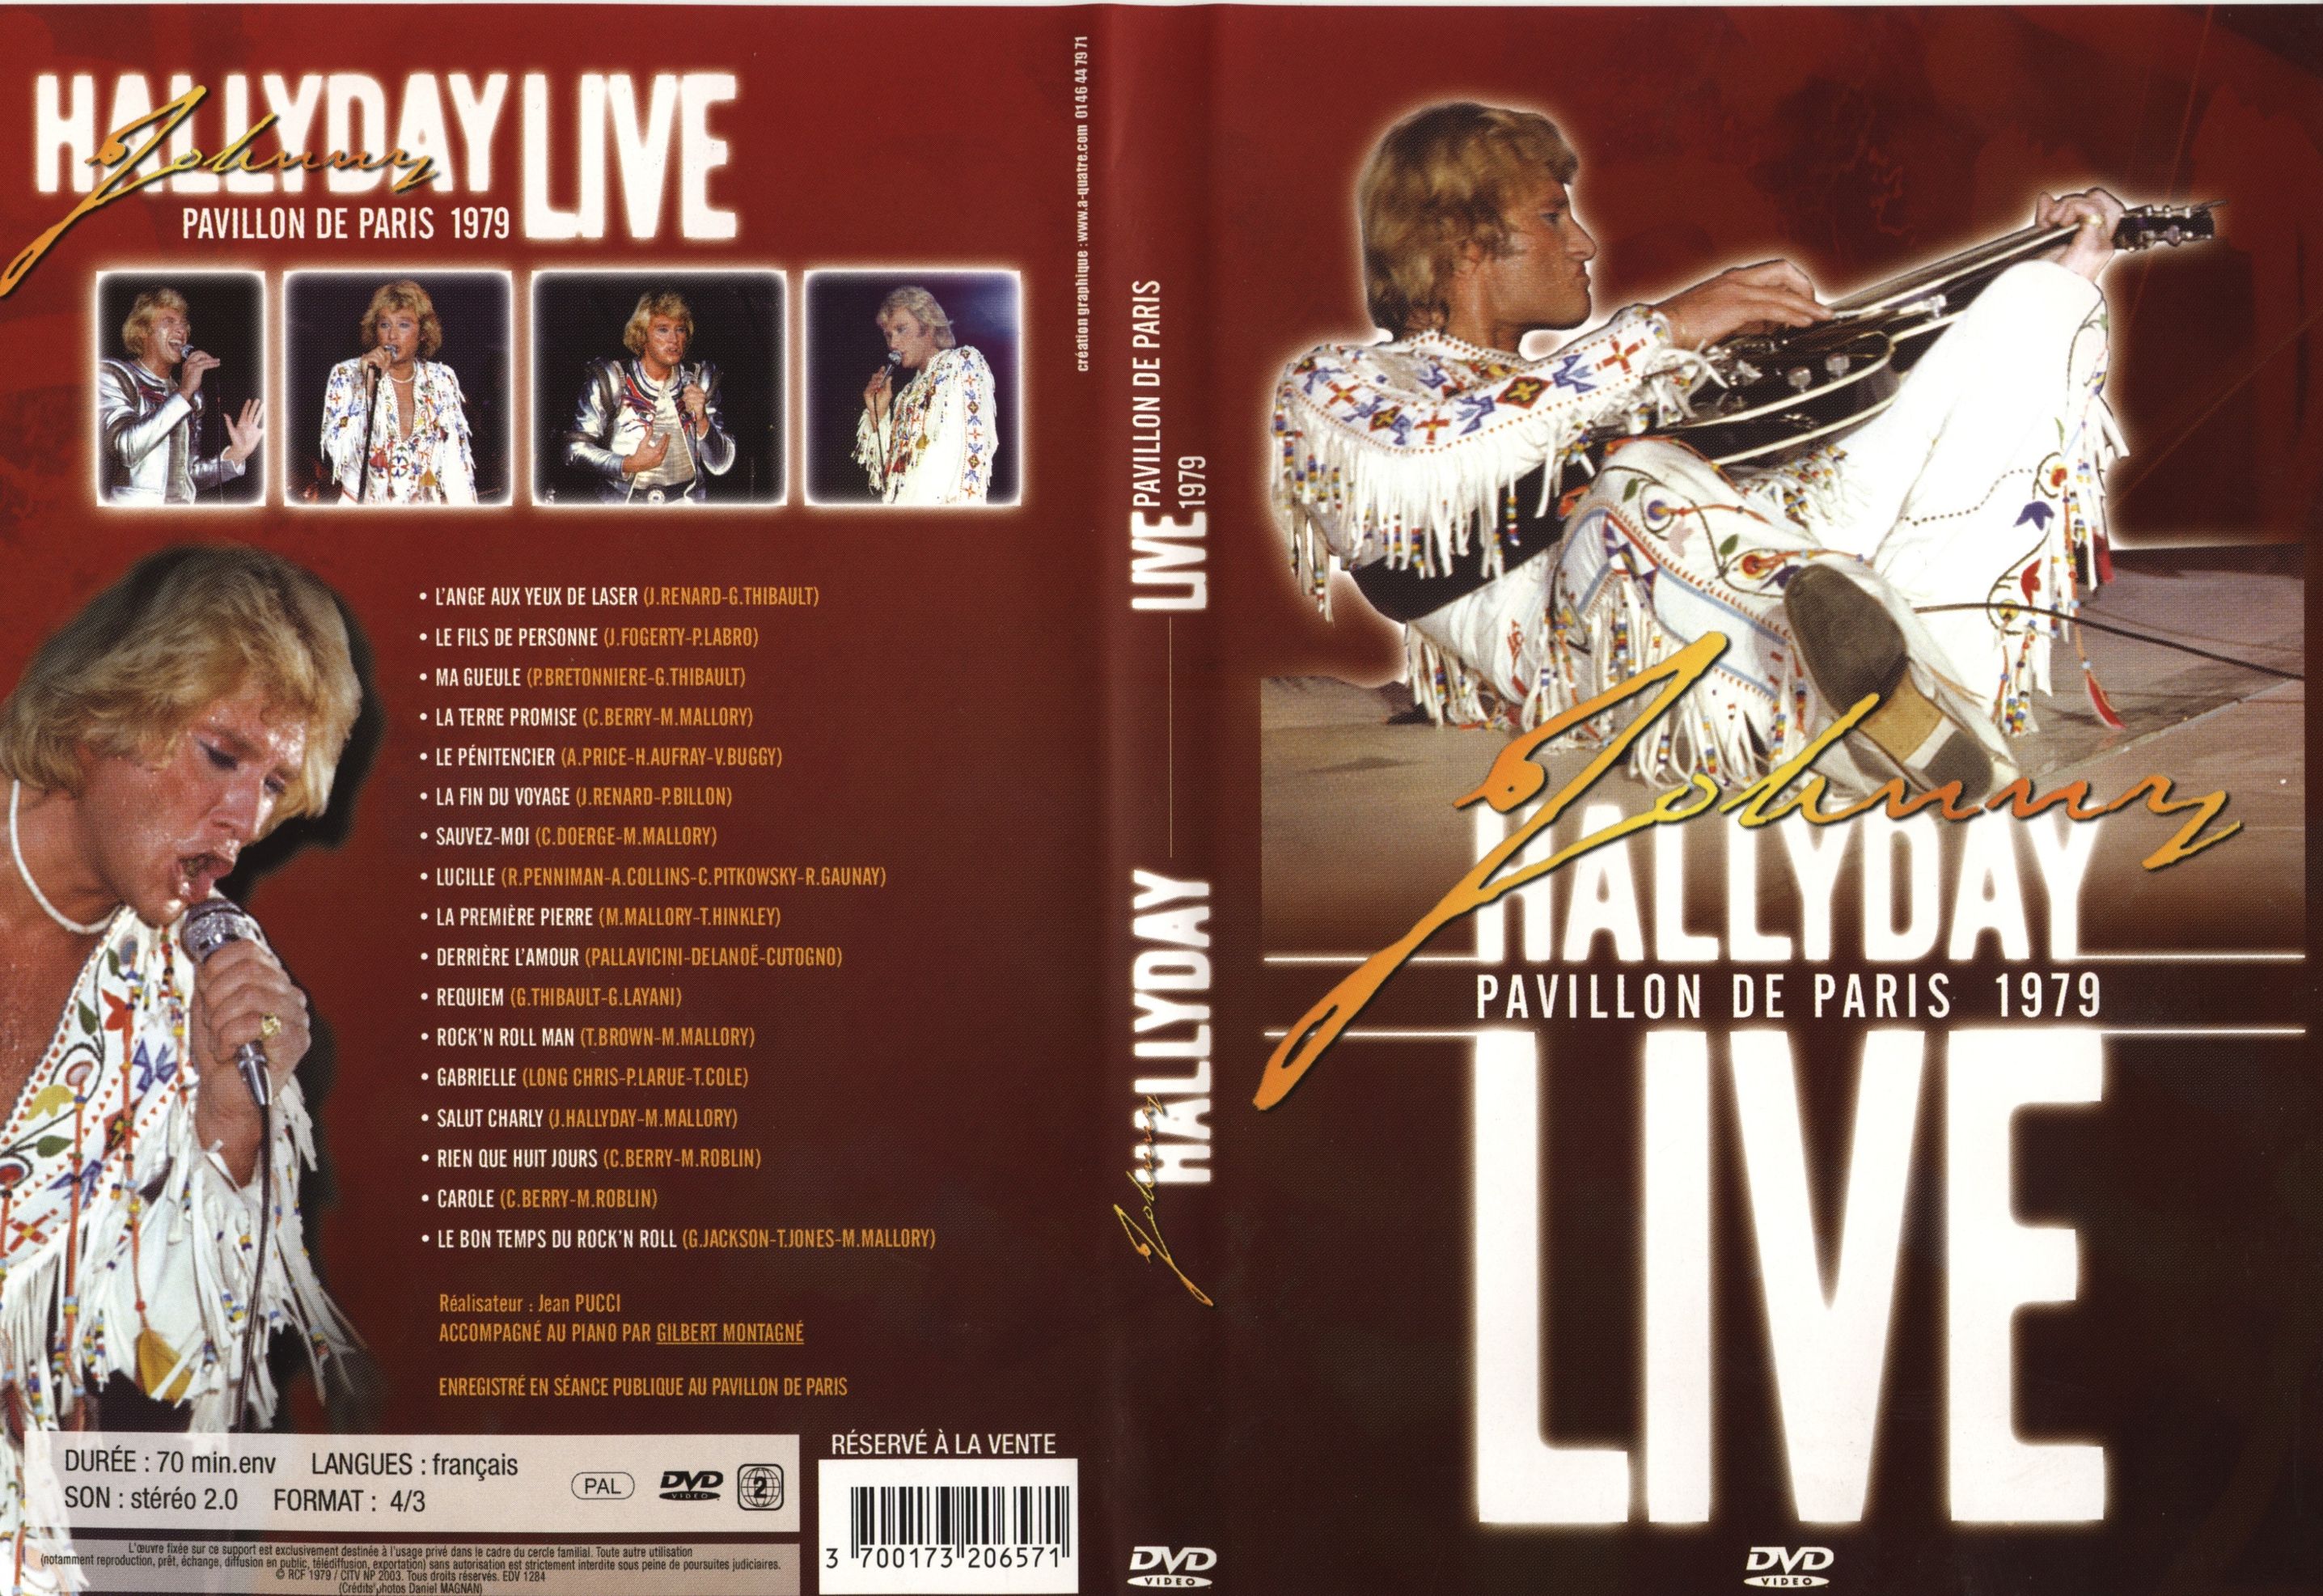 Jaquette DVD Johnny Hallyday Pavillon de Paris 1979